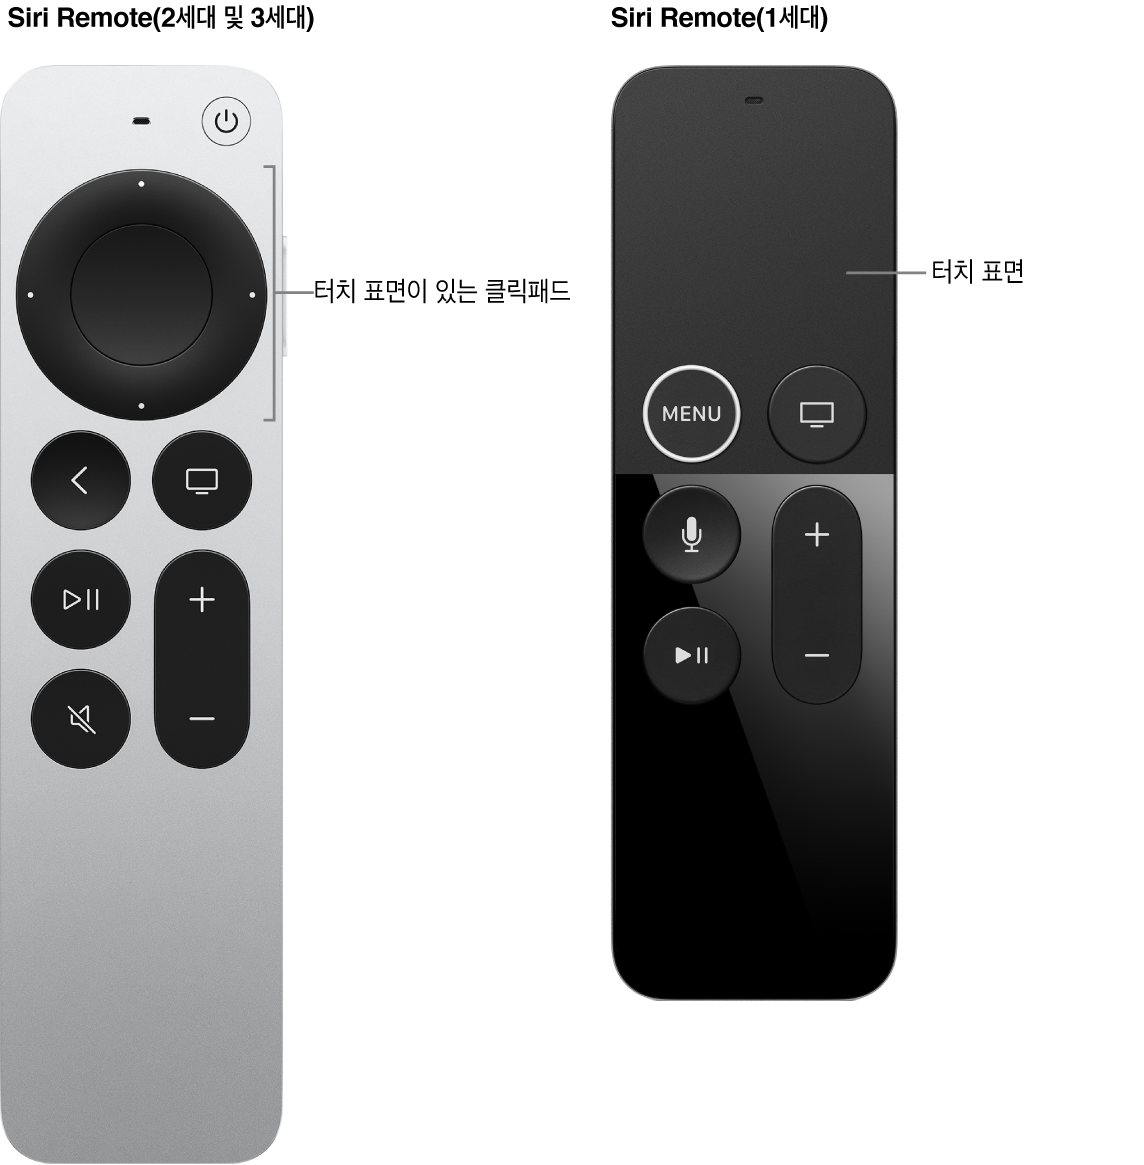 클릭패드가 있는 Siri Remote(2세대 및 3세대)와 터치 표면이 있는 Siri Remote(1세대)